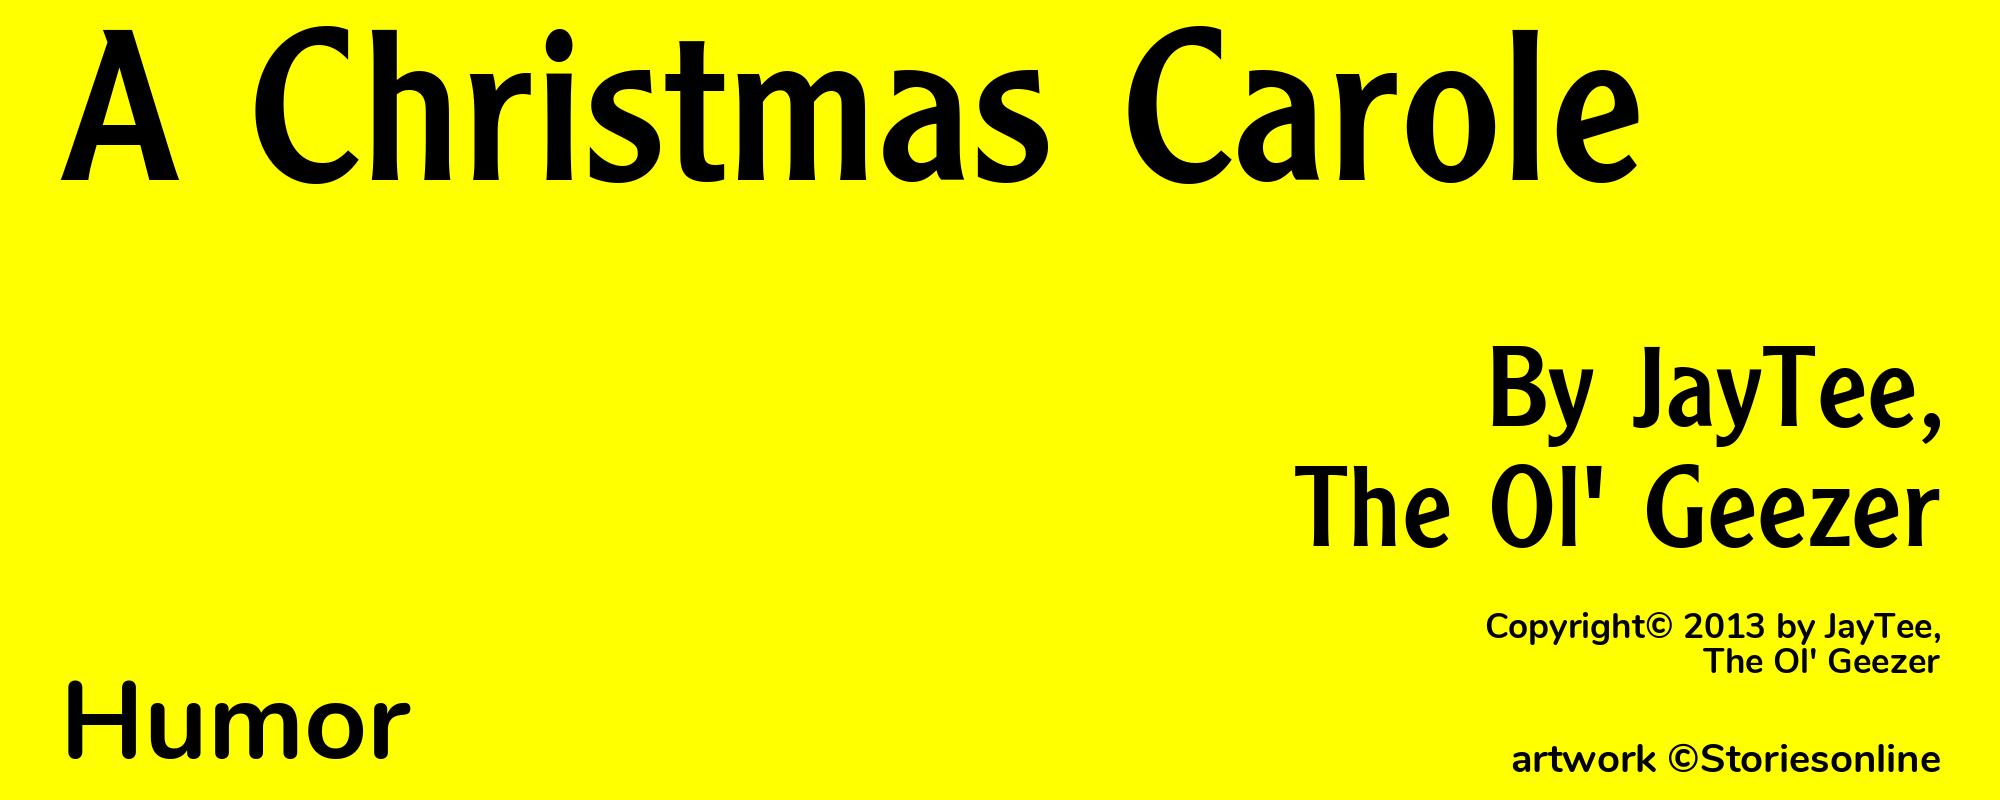 A Christmas Carole - Cover